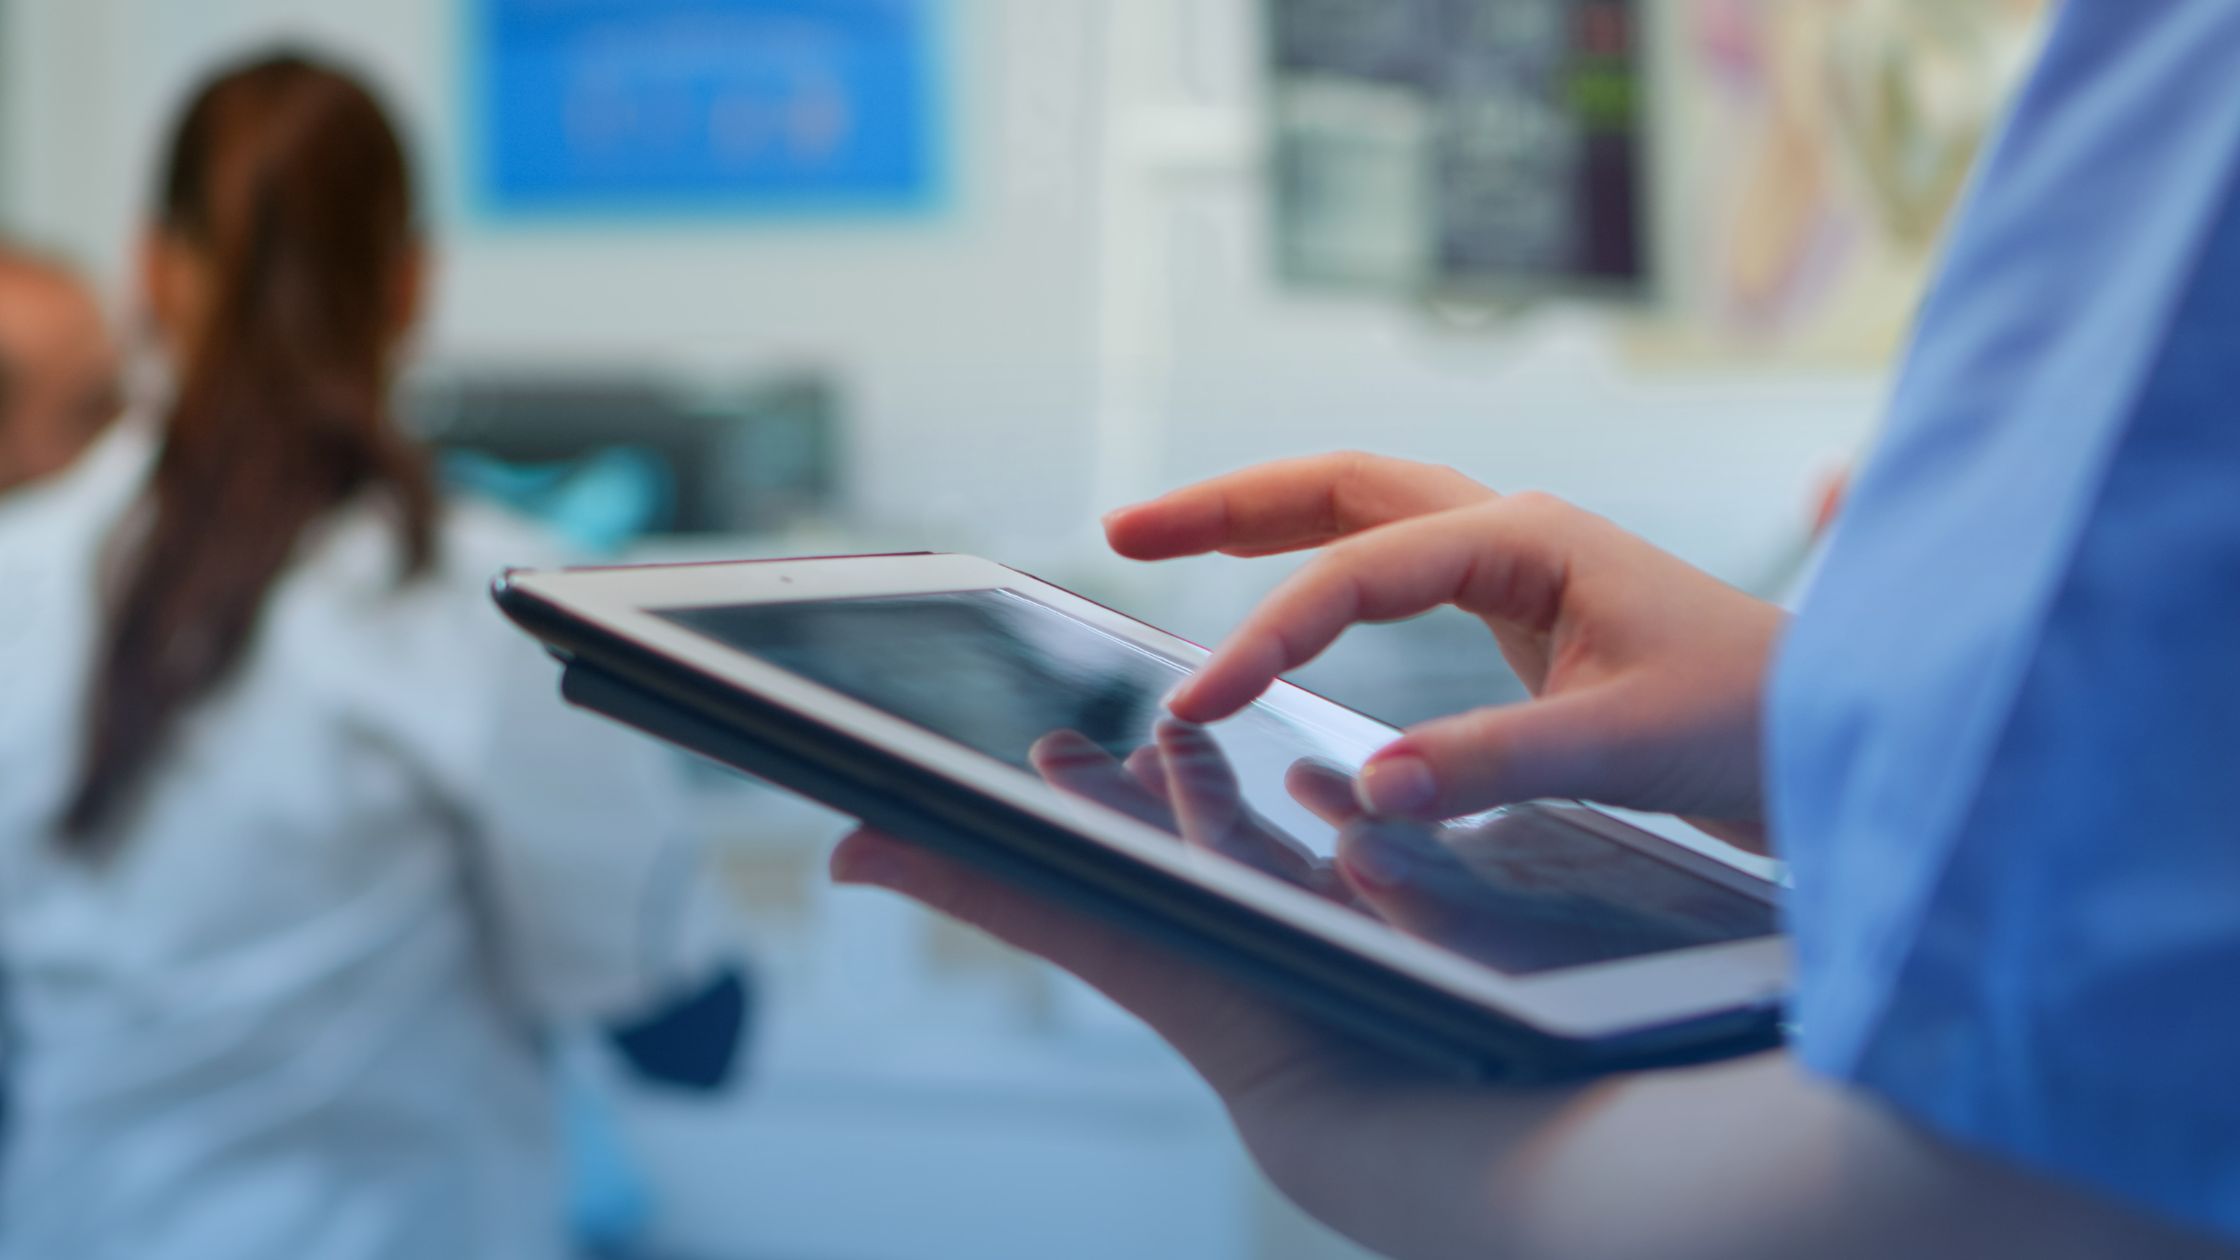 Mulher segurando um tablet dentro de um hospital. A imagem representa a transformação na gestão hospitalar gerada pela tecnologia.